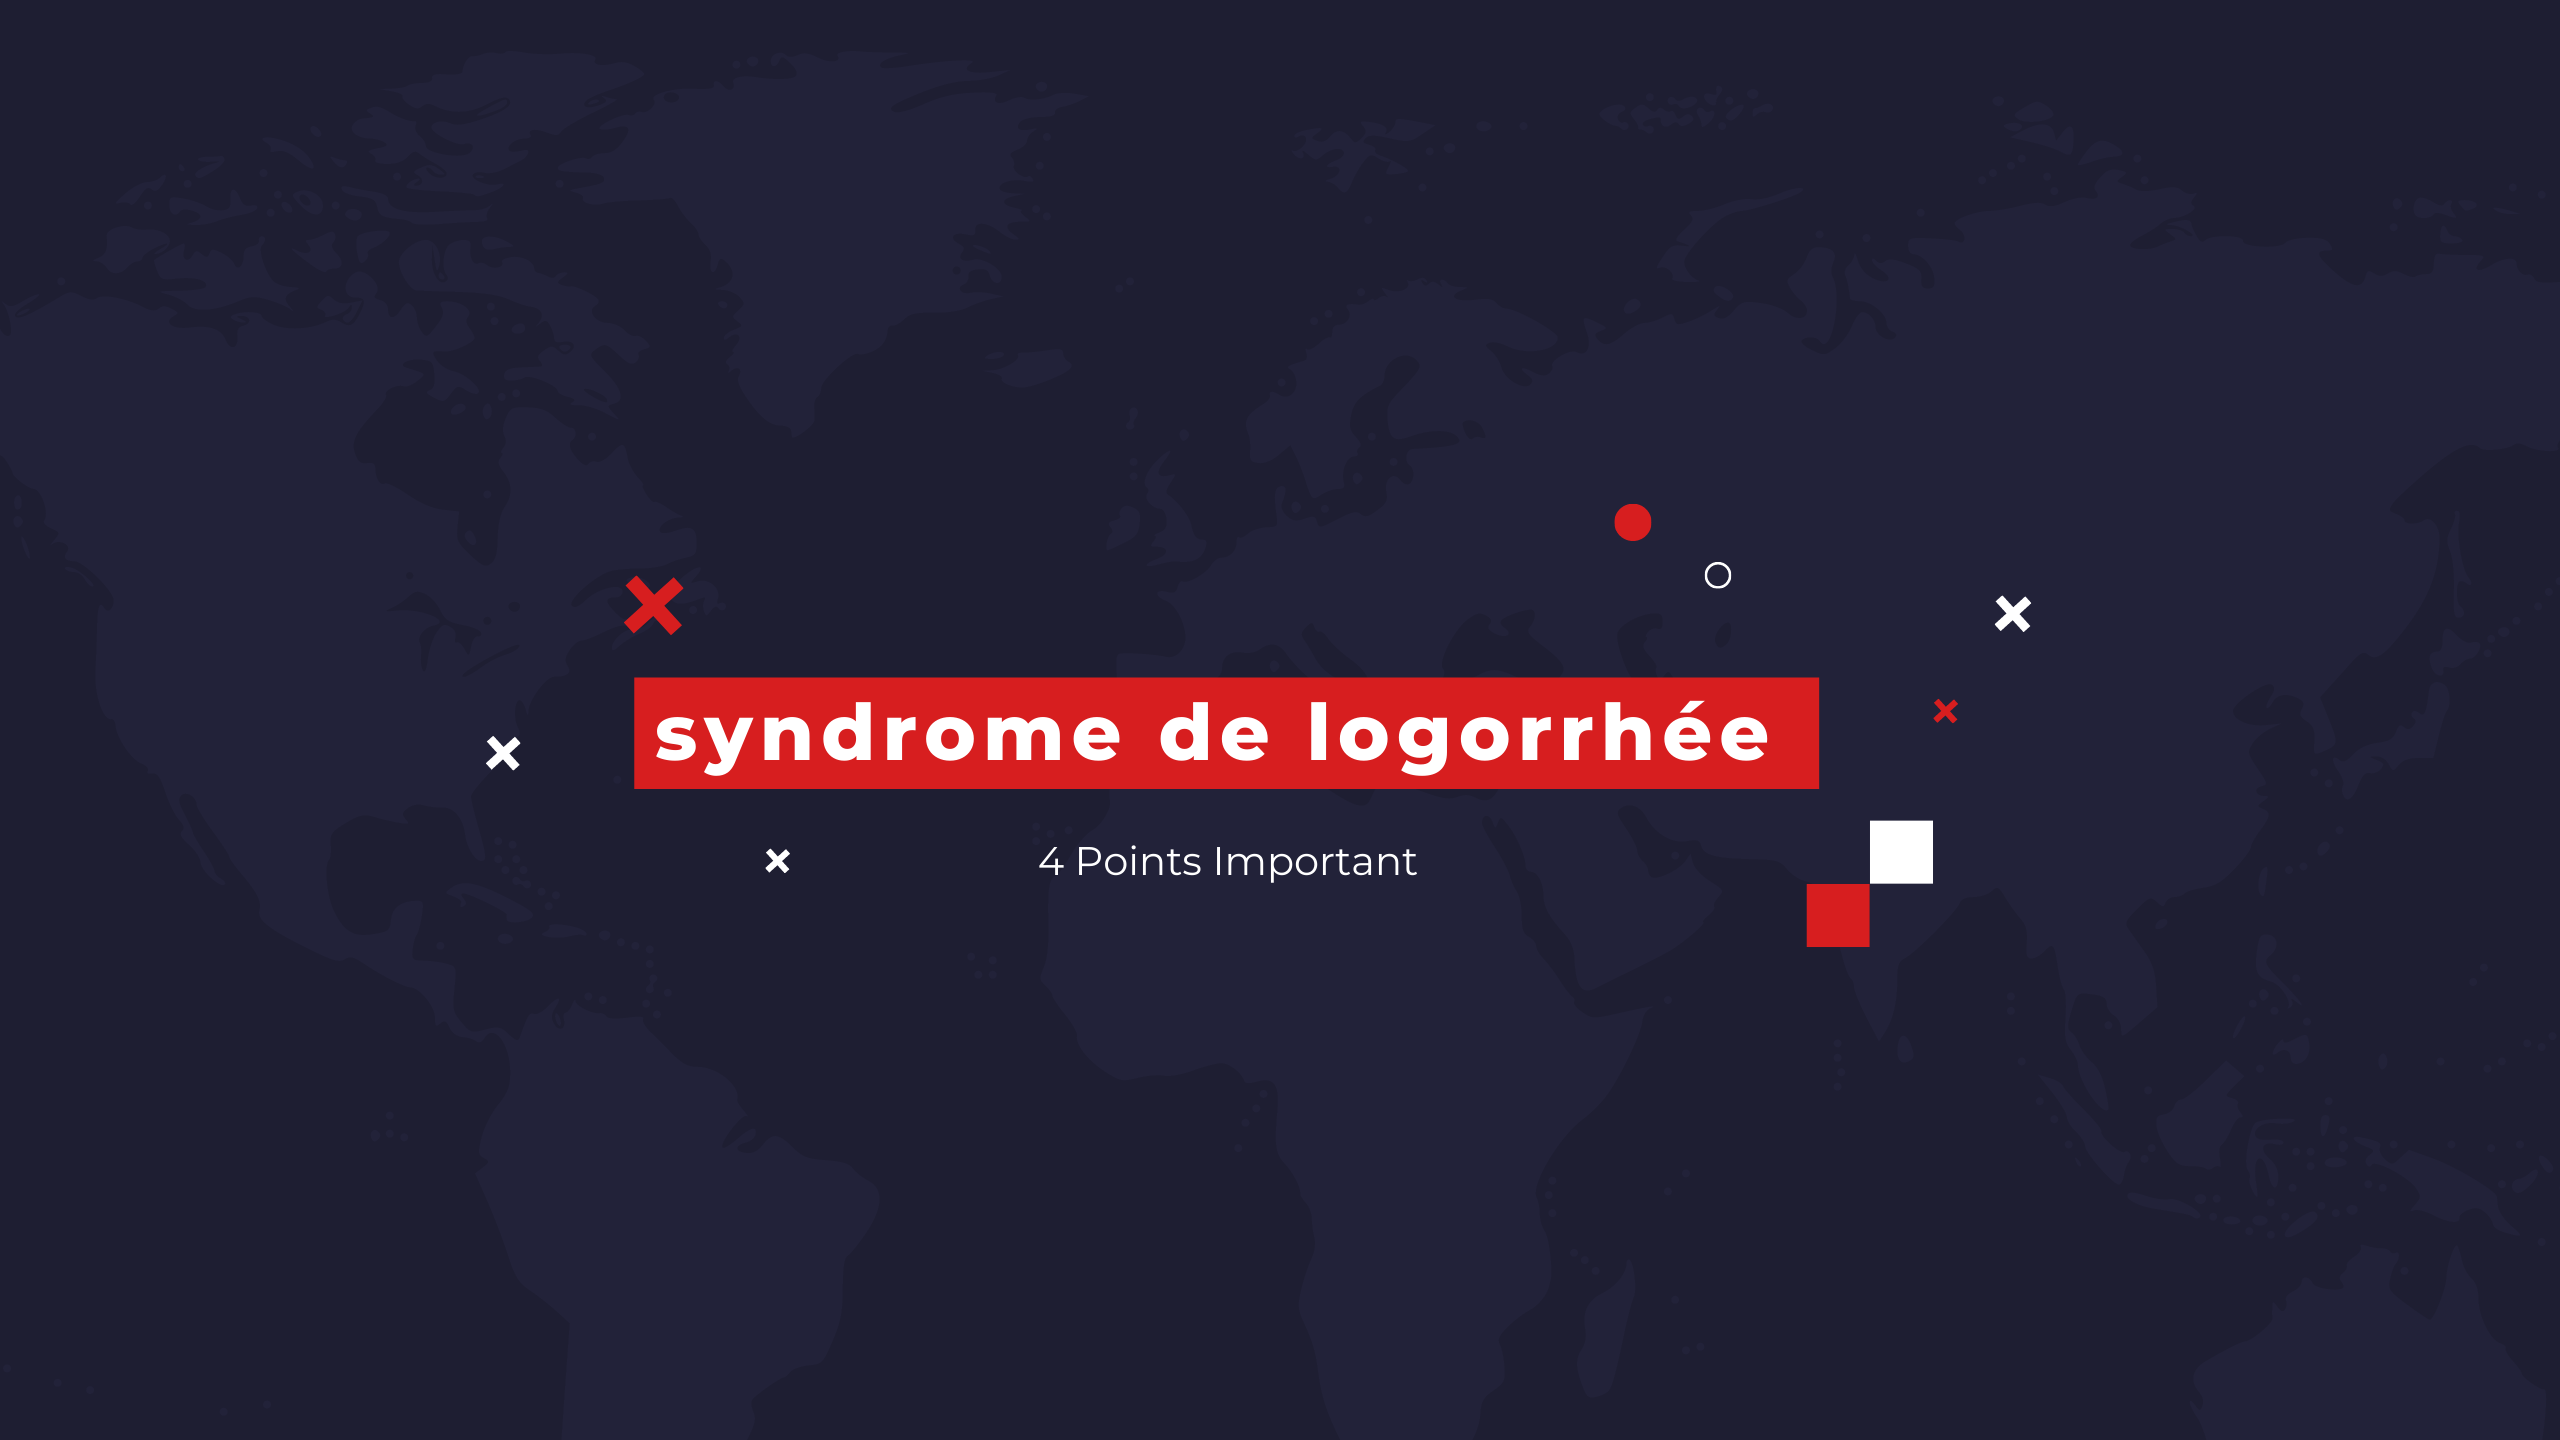 syndrome de logorrhée | 4 Points Important